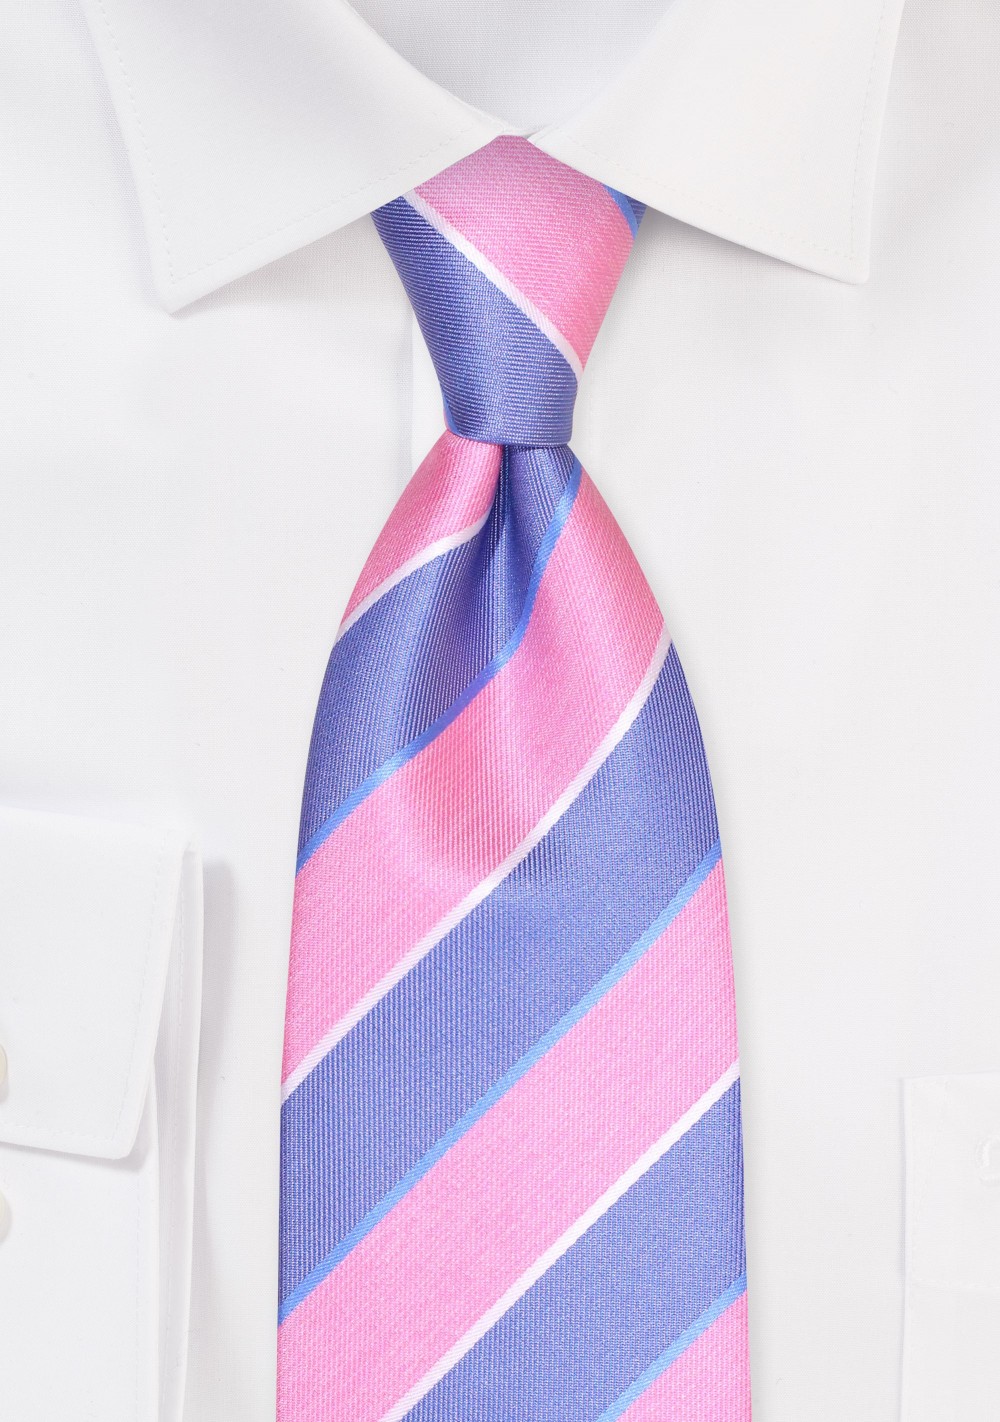 Stripe XL Designer Tie in Pink and Blue